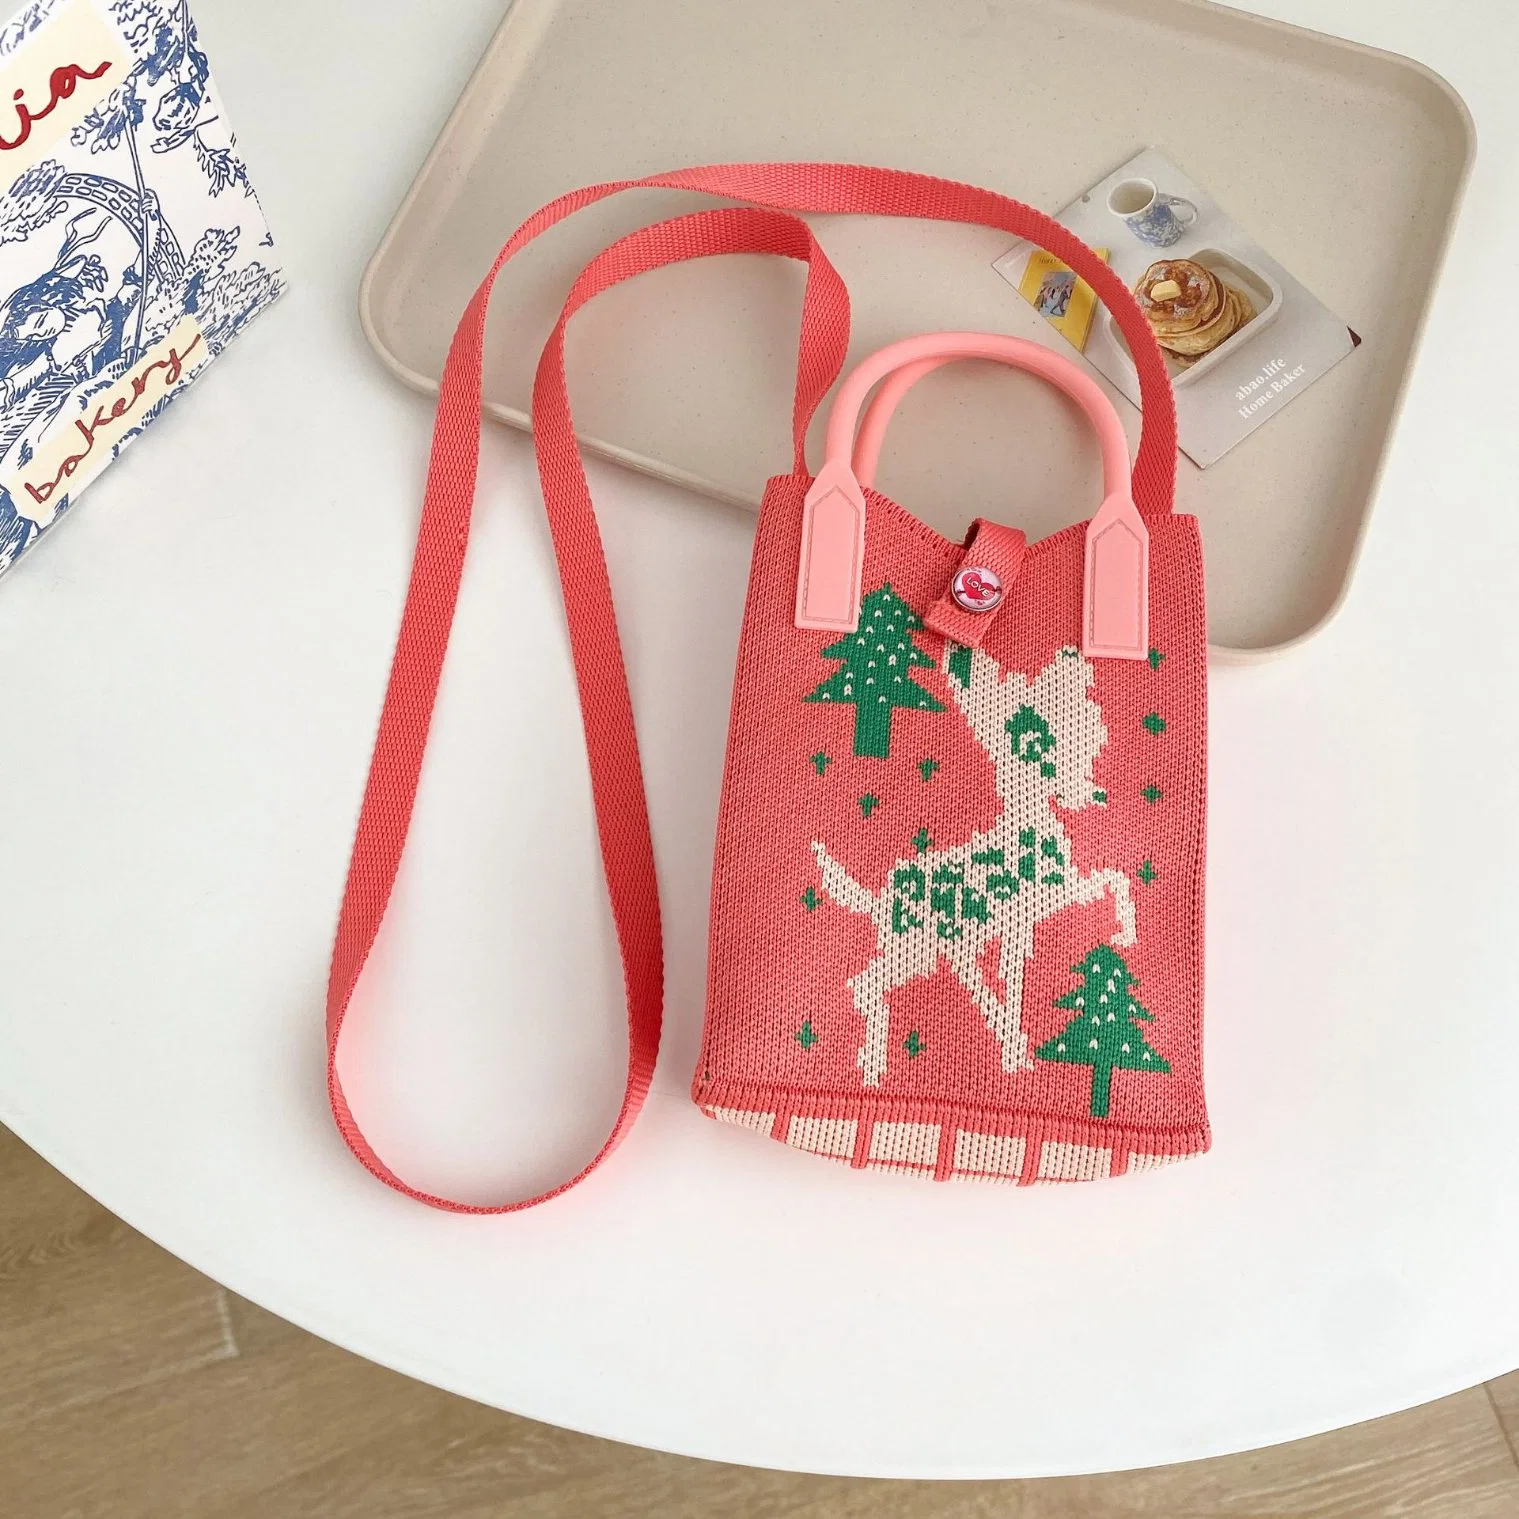 Knit Single Shoulder Bag Travel Shopping Bag Wallet Handbag for Girl